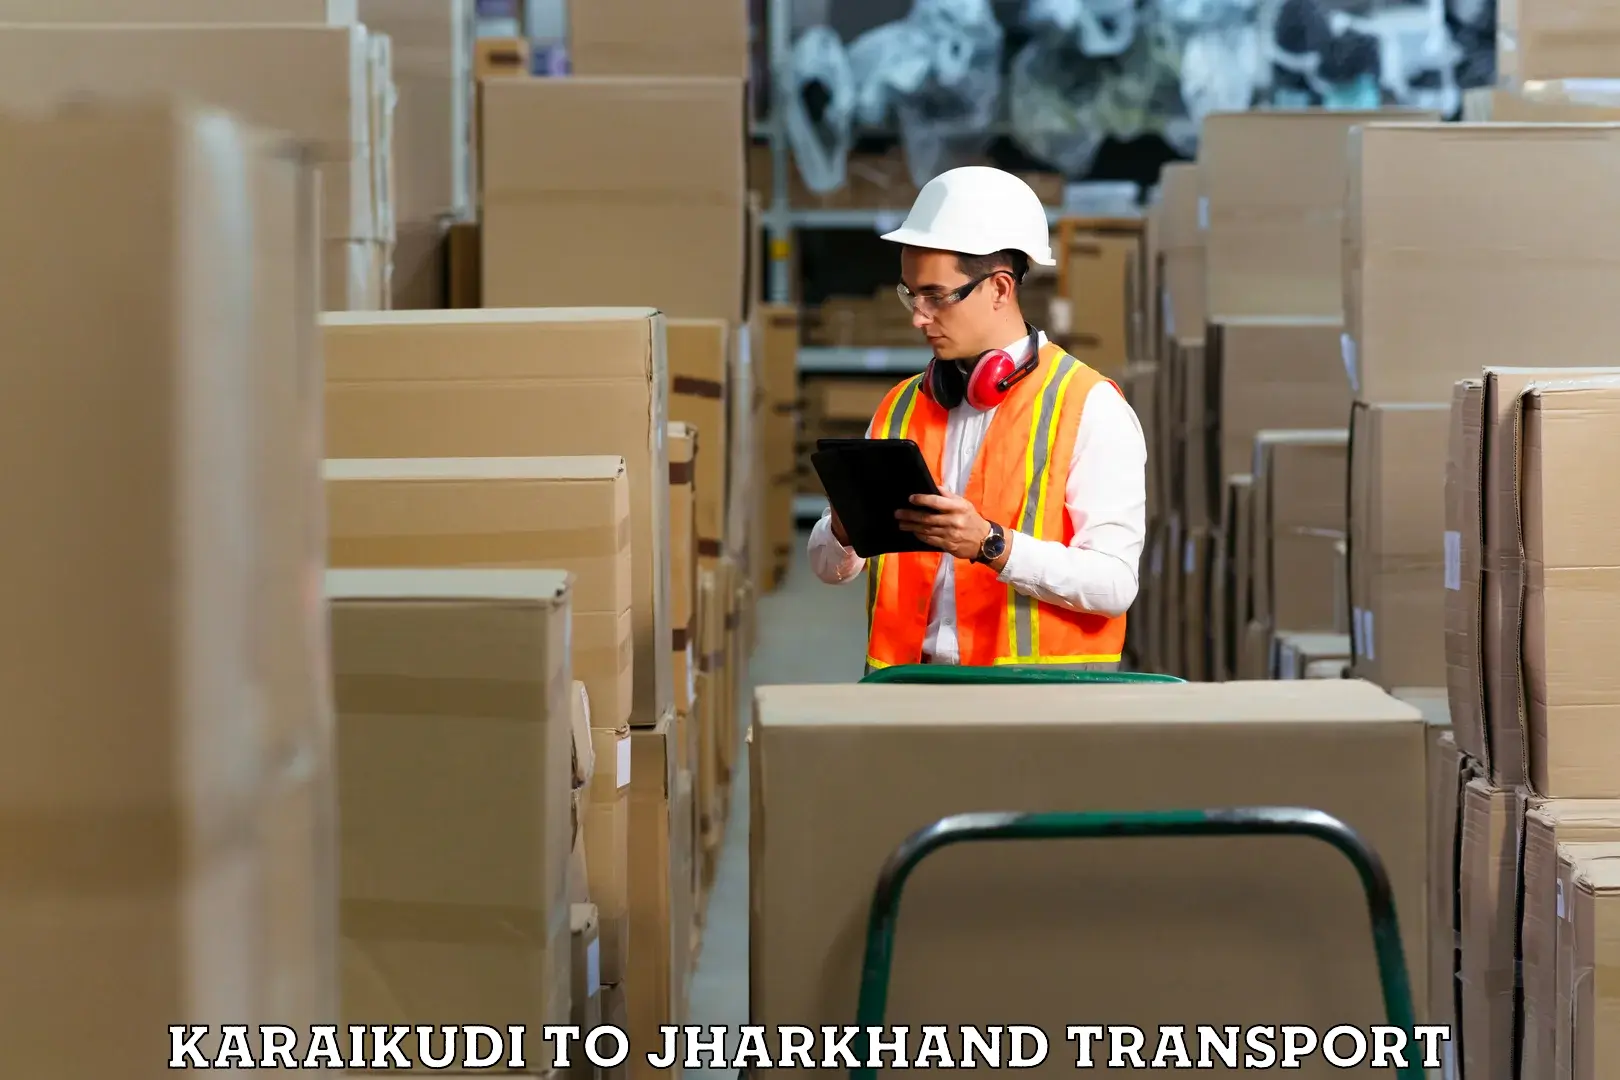 Container transport service Karaikudi to Rajdhanwar